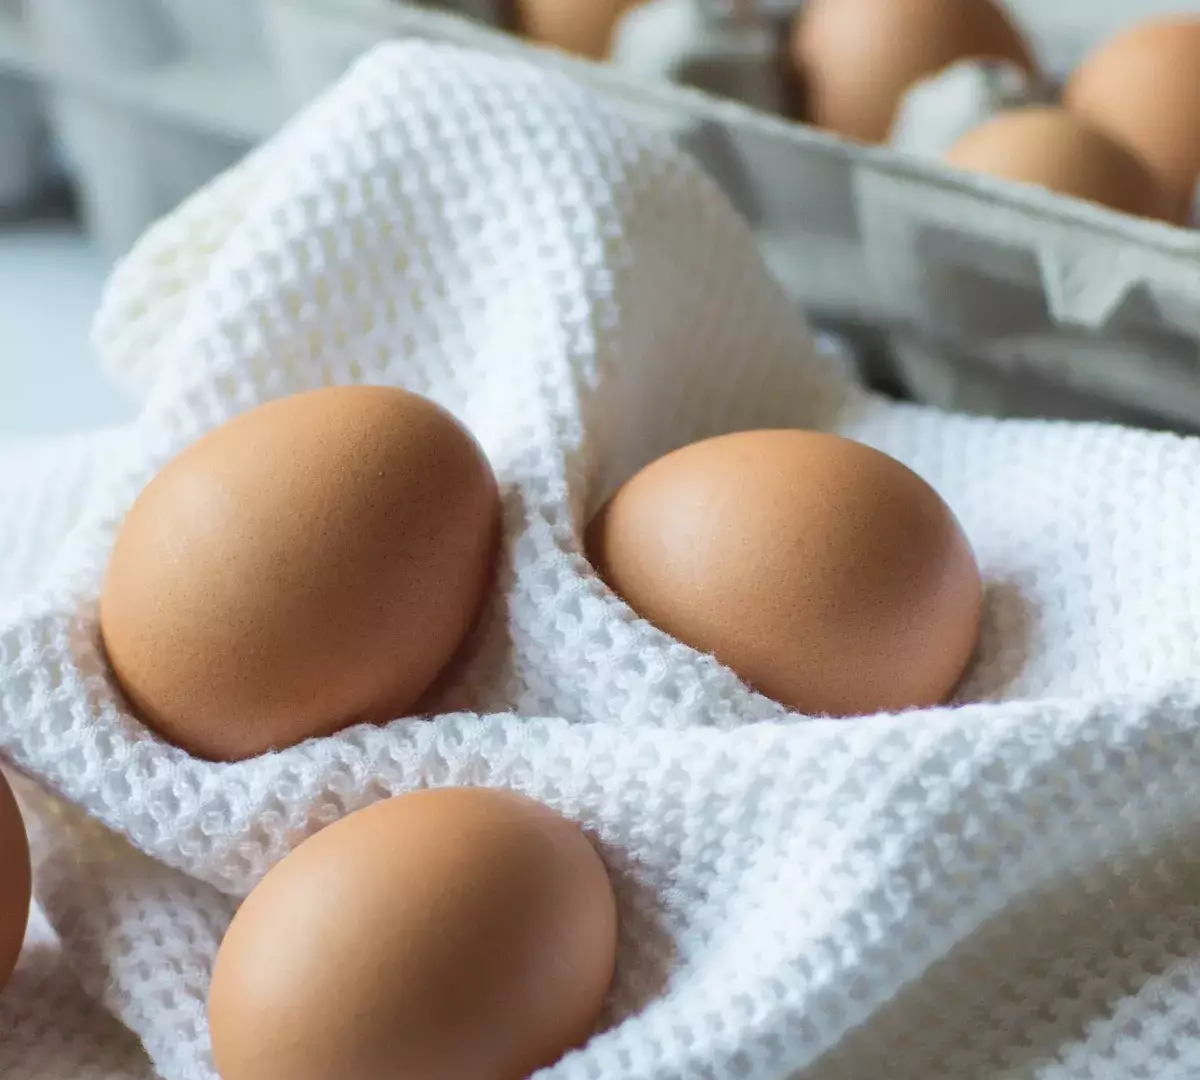 Скачок цен: контрабанда яиц процветает в США из-за высокой инфляции